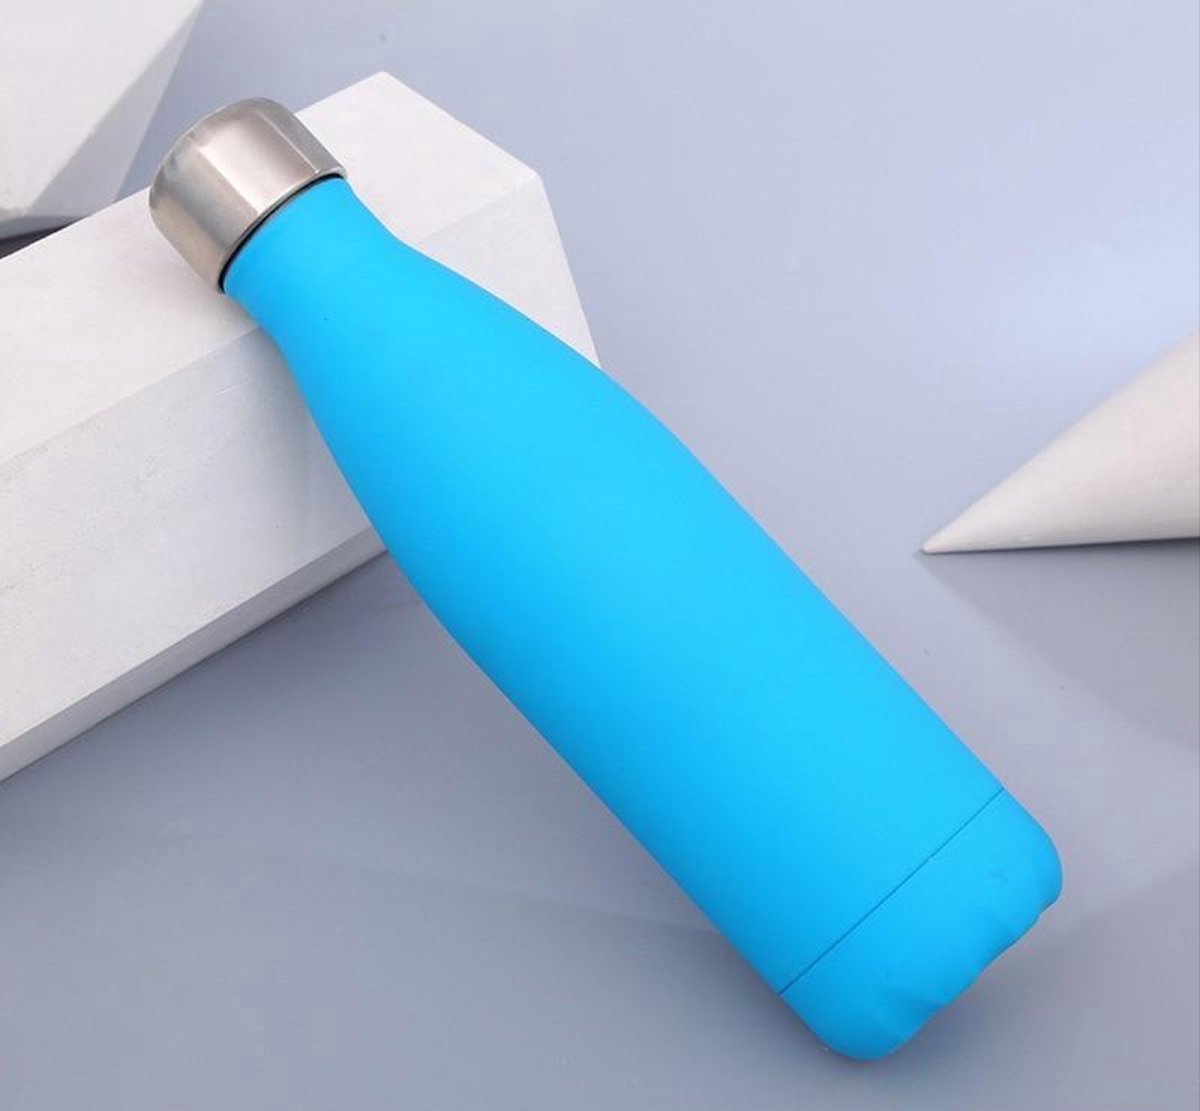 Finnacle - Neem je water mee in stijl met de 500ML Blauwe Thermosfles - RVS - Perfect voor onderweg!